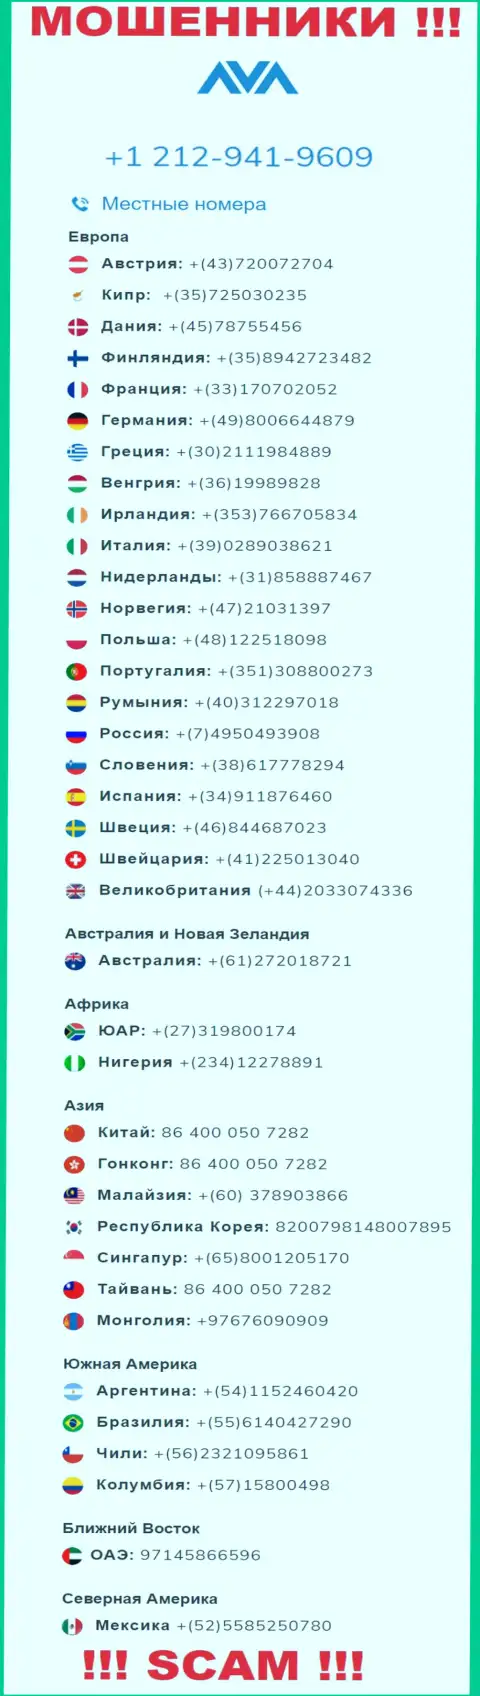 Мошенники из организации AvaTrade Ru, чтобы развести доверчивых людей на средства, звонят с различных номеров телефона